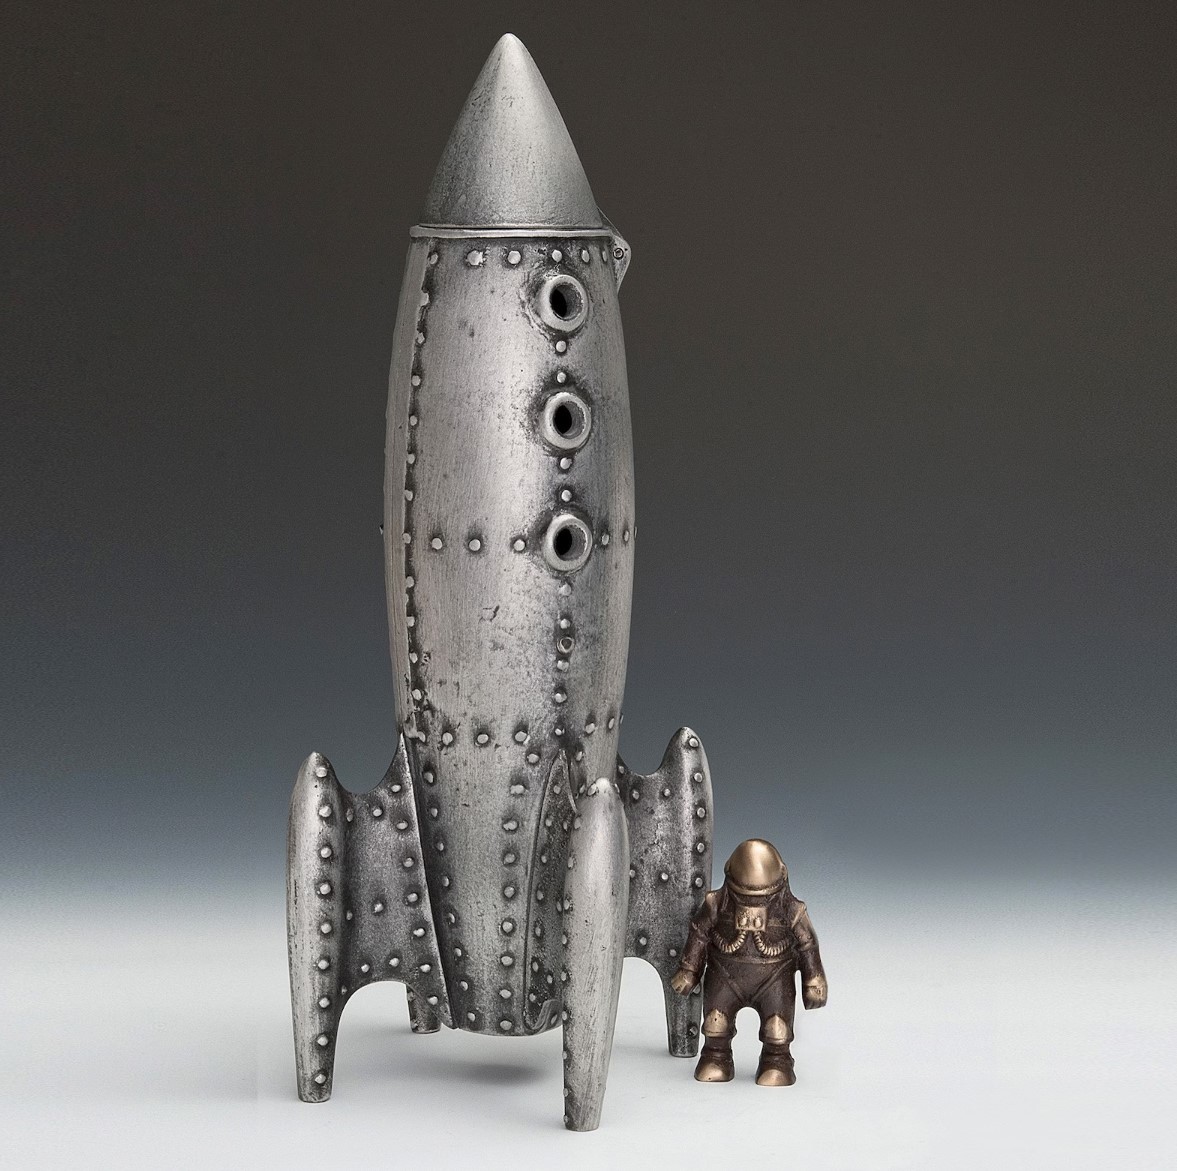 달 로켓과 우주 비행사 인형, 예술가가 금속으로 만든 것, 핸드메이드 아이템, 내부, 잡화, 장식, 물체